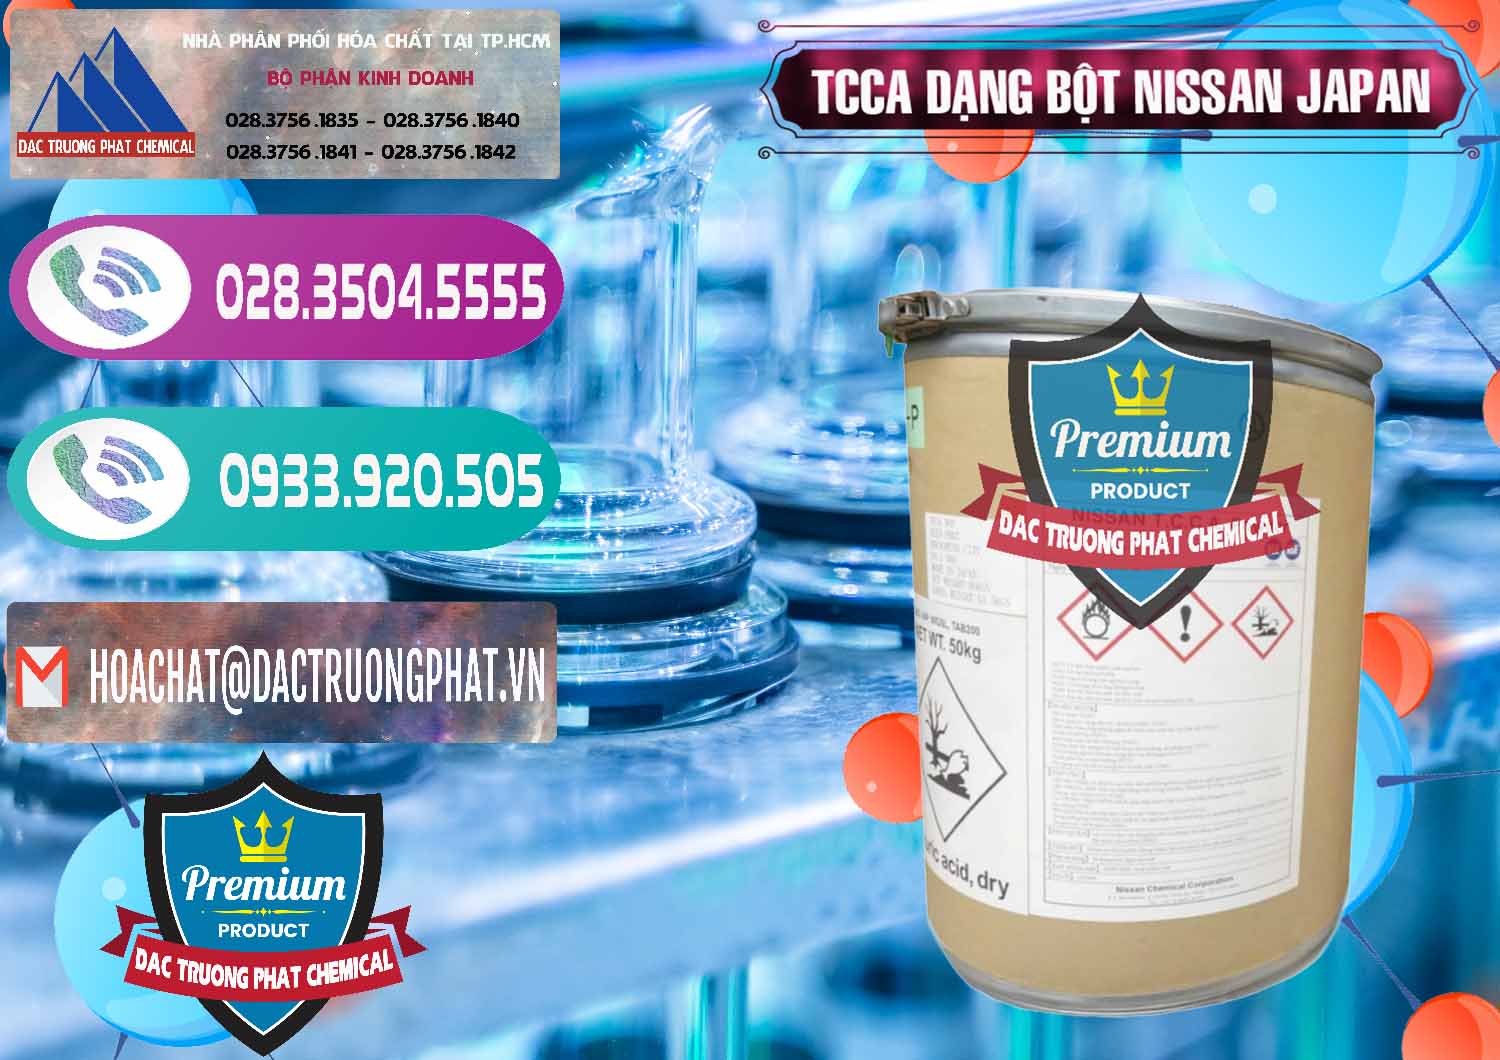 Đơn vị chuyên bán ( cung cấp ) TCCA - Acid Trichloroisocyanuric 90% Dạng Bột Nissan Nhật Bản Japan - 0375 - Công ty chuyên bán & phân phối hóa chất tại TP.HCM - hoachatxulynuoc.com